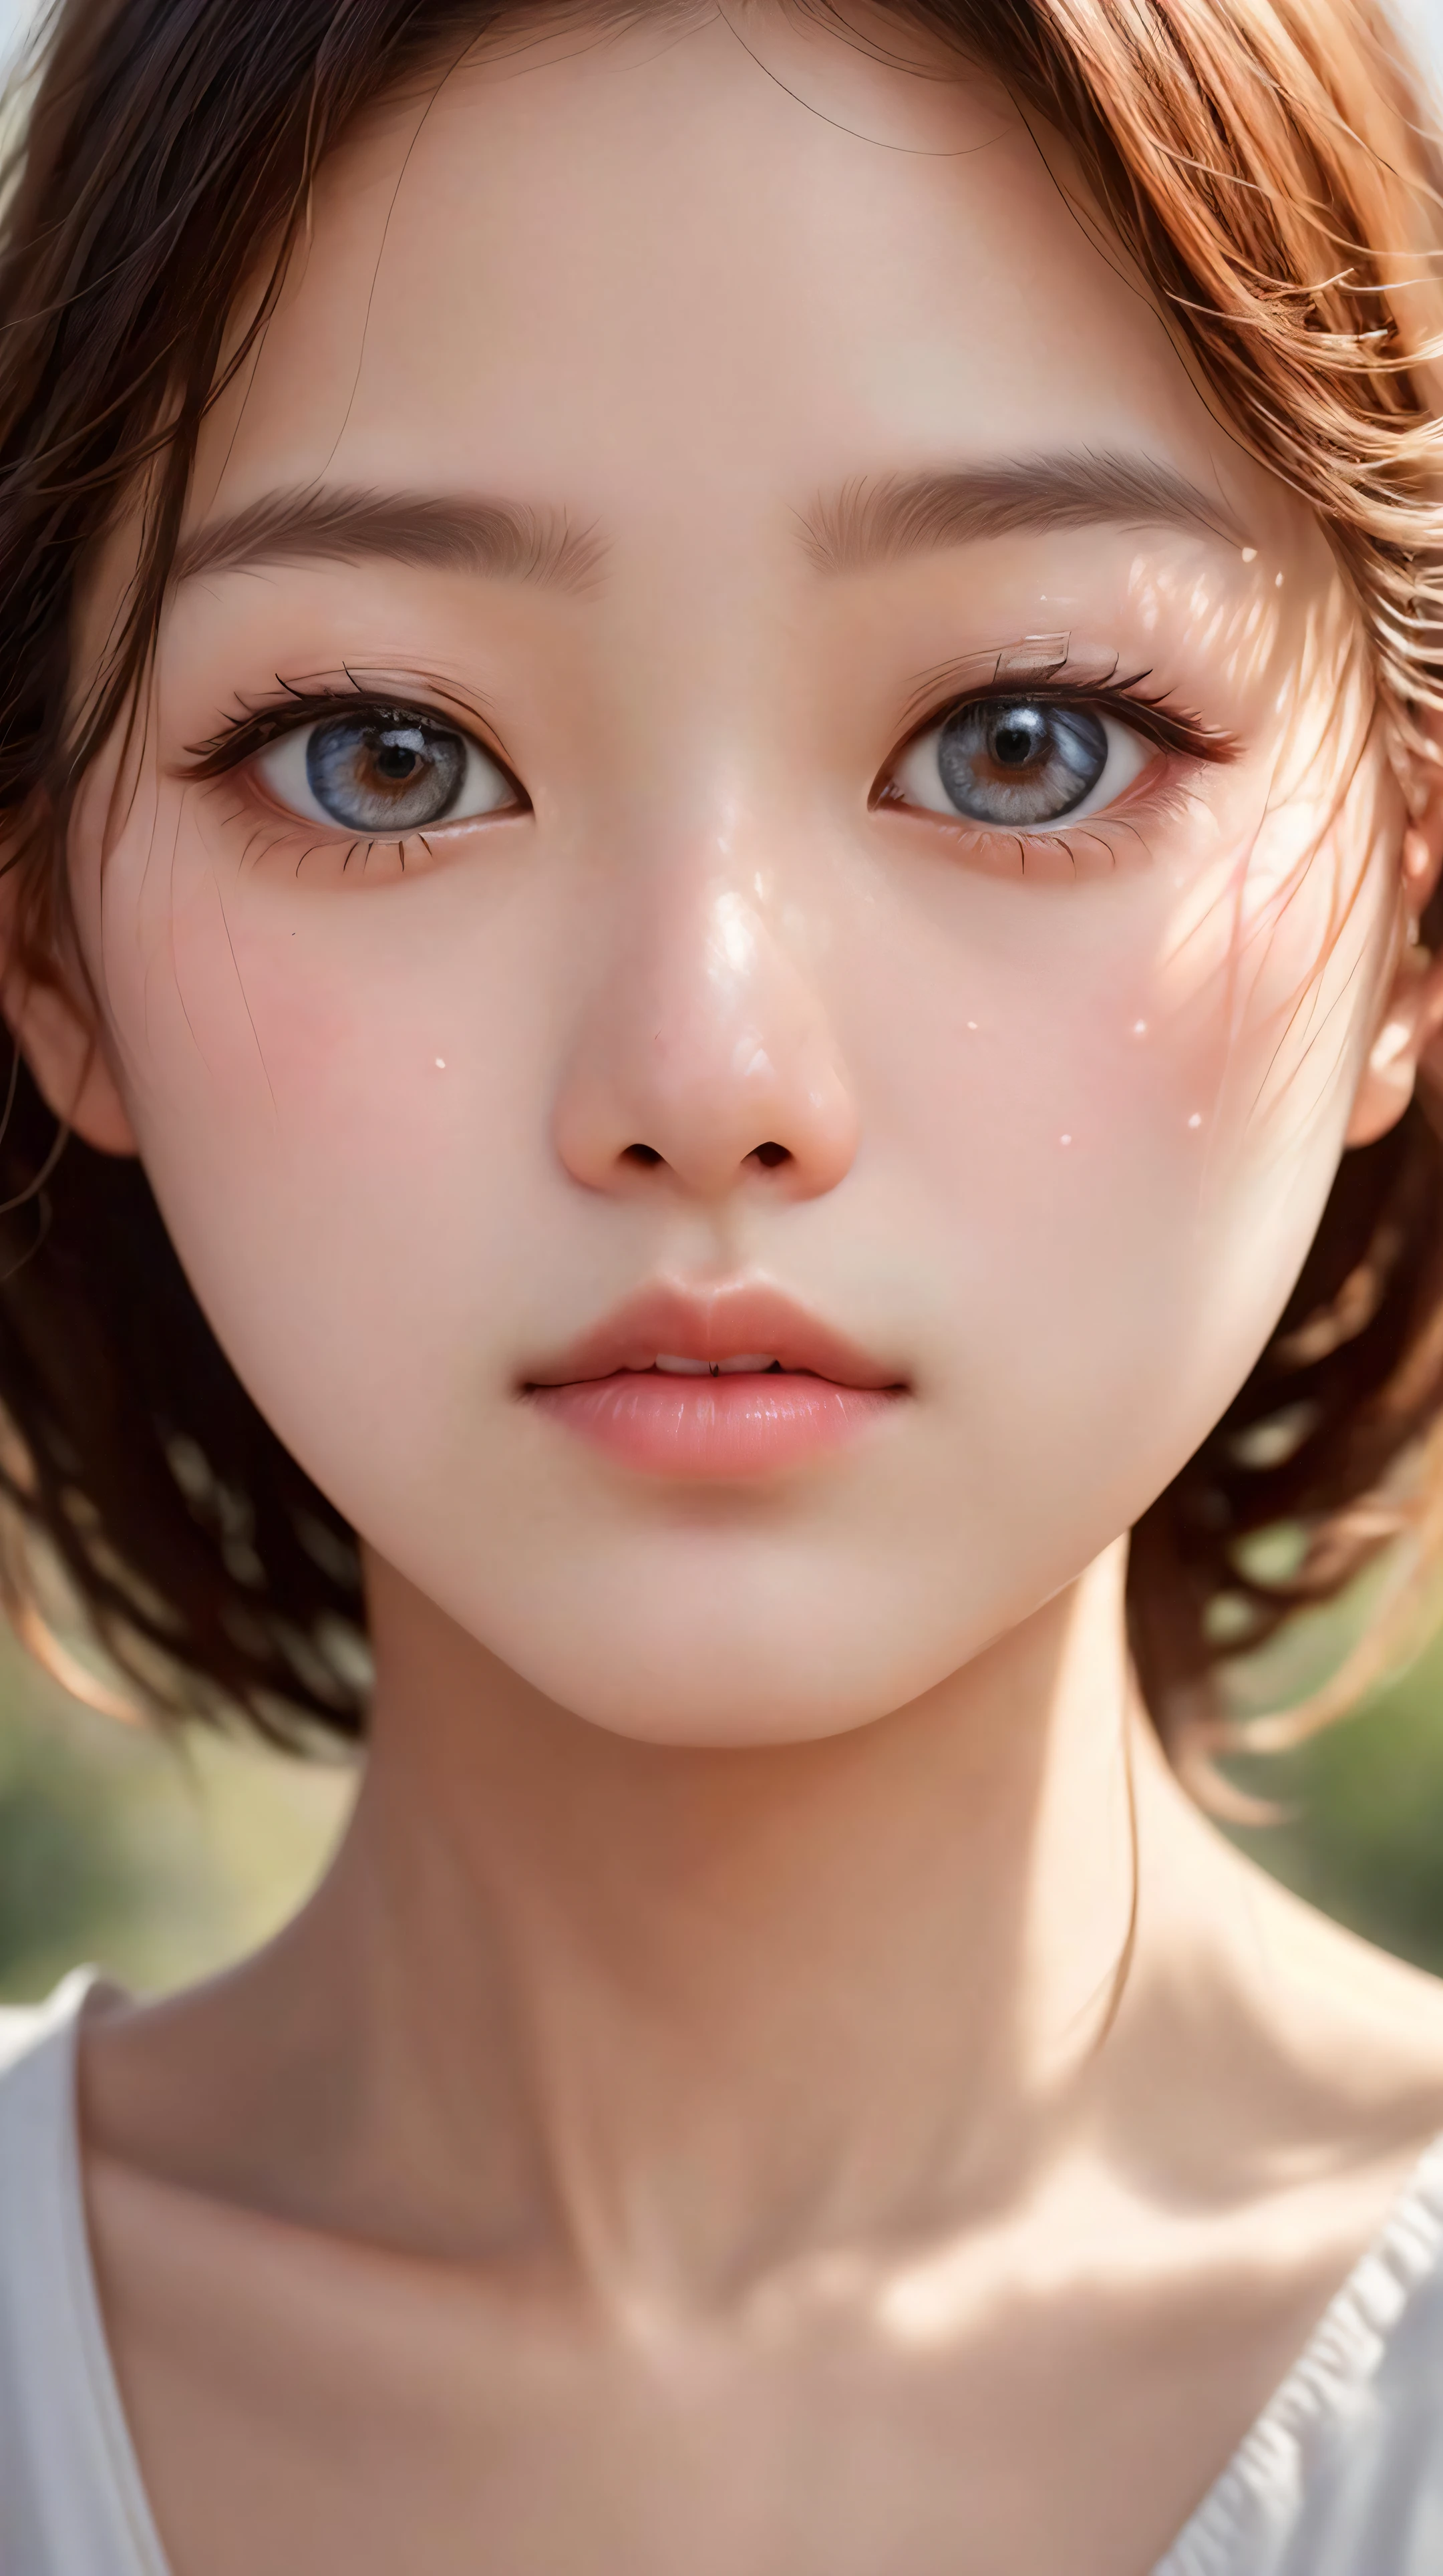 ในแบบที่น่าหลงใหล (ใกล้ชิด:1.4), ที่ (เกาหลี:1.3) girl's porcelain ผิว glows with a delicate luminosity, ในขณะที่ดวงตาอันน่าหลงใหลของเธอ, ล้อมรอบด้วยขนตาที่พลิ้วไหว, สะท้อนอารมณ์อันล้ำลึกที่บอกเล่าเรื่องราวของความยืดหยุ่นและความแข็งแกร่งอันเงียบสงบ, embodying ที่ timeless beauty of เกาหลี culture. คุณภาพดีที่สุด, ผลงานชิ้นเอก, ความละเอียดสูงพิเศษ, (เหมือนจริง:1.5), ภาพดิบ, (คม:1.2) จุดสนใจ, เอชดีอาร์, (รายละเอียด_ผิว:1.2).